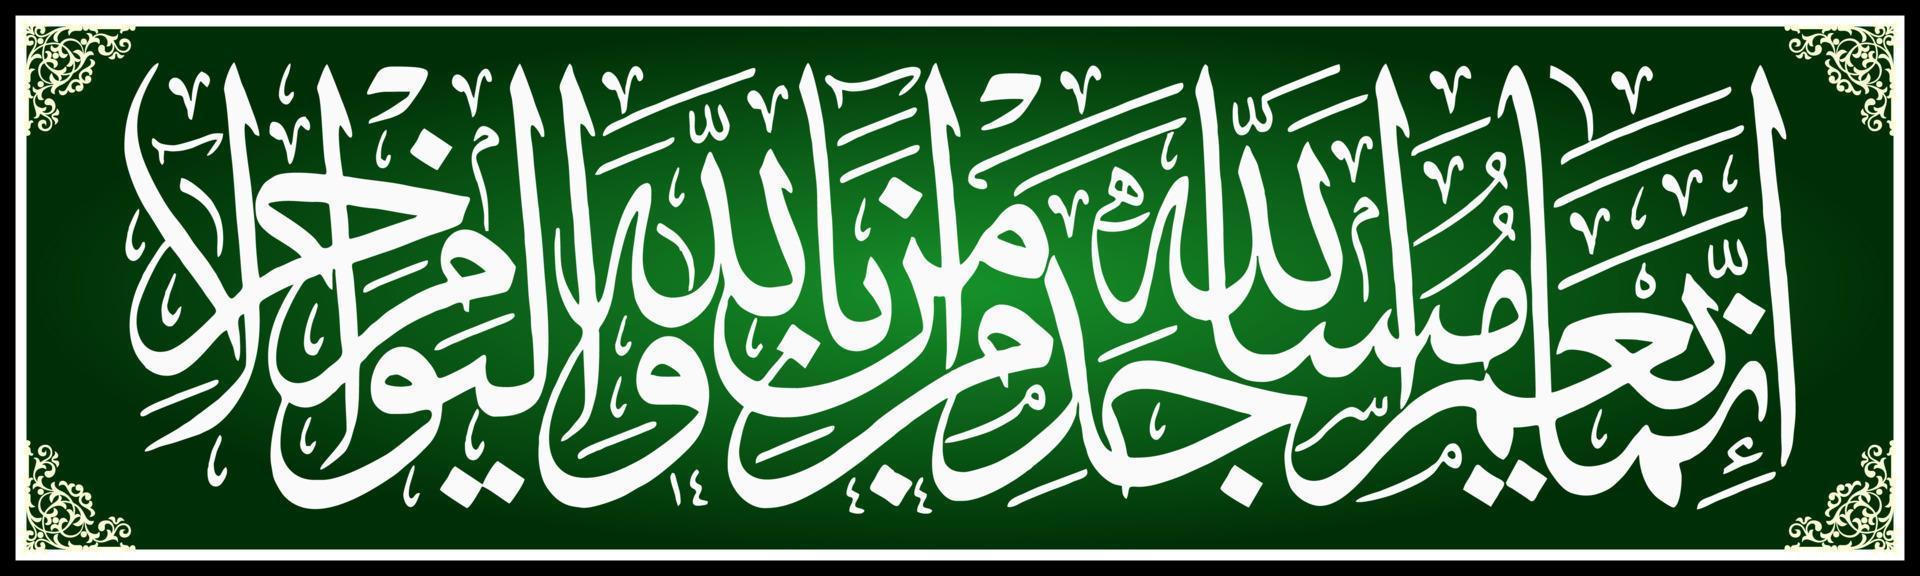 caligrafia árabe, al qur'an surah em taubah 18, tradução apenas aqueles que prosperam nas mesquitas de alá são aqueles que acreditam em alá e no dia que virá vetor